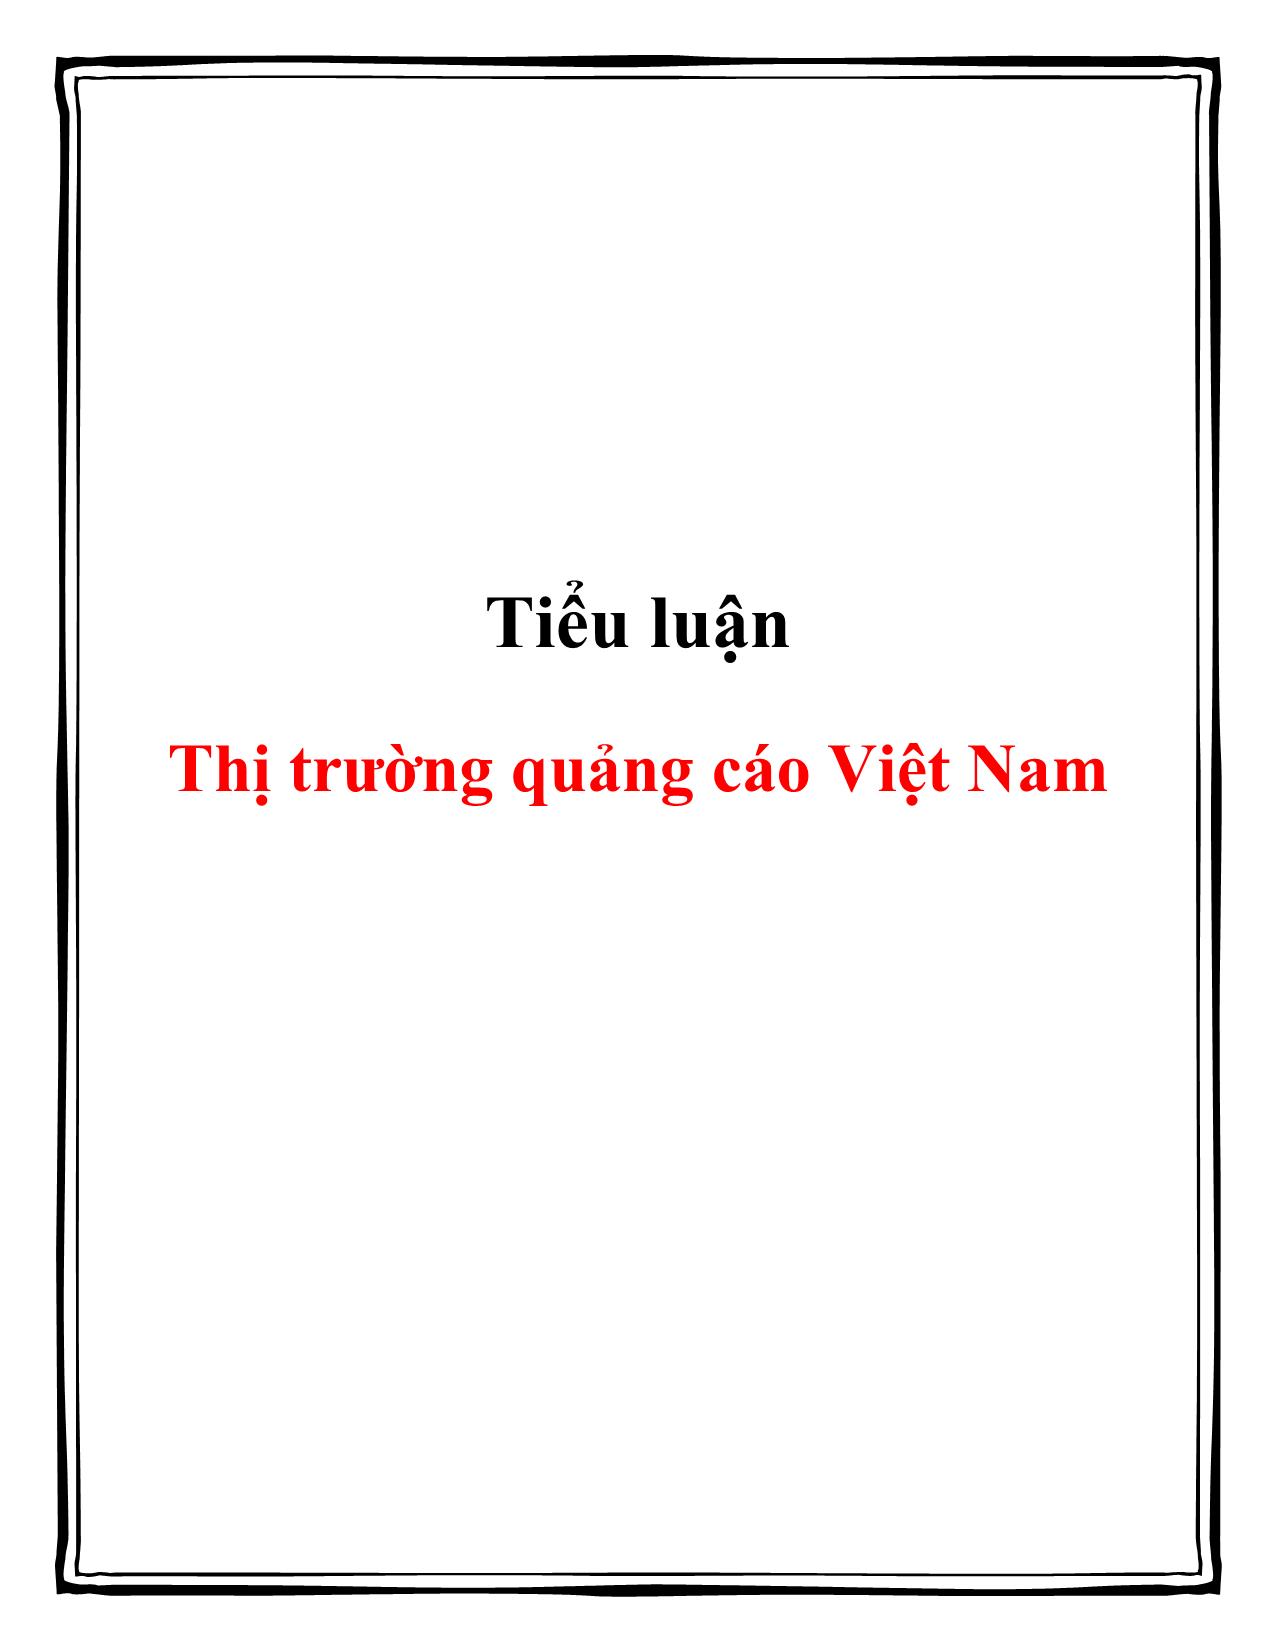 Tiểu luận Thị trường quảng cáo Việt Nam trang 1